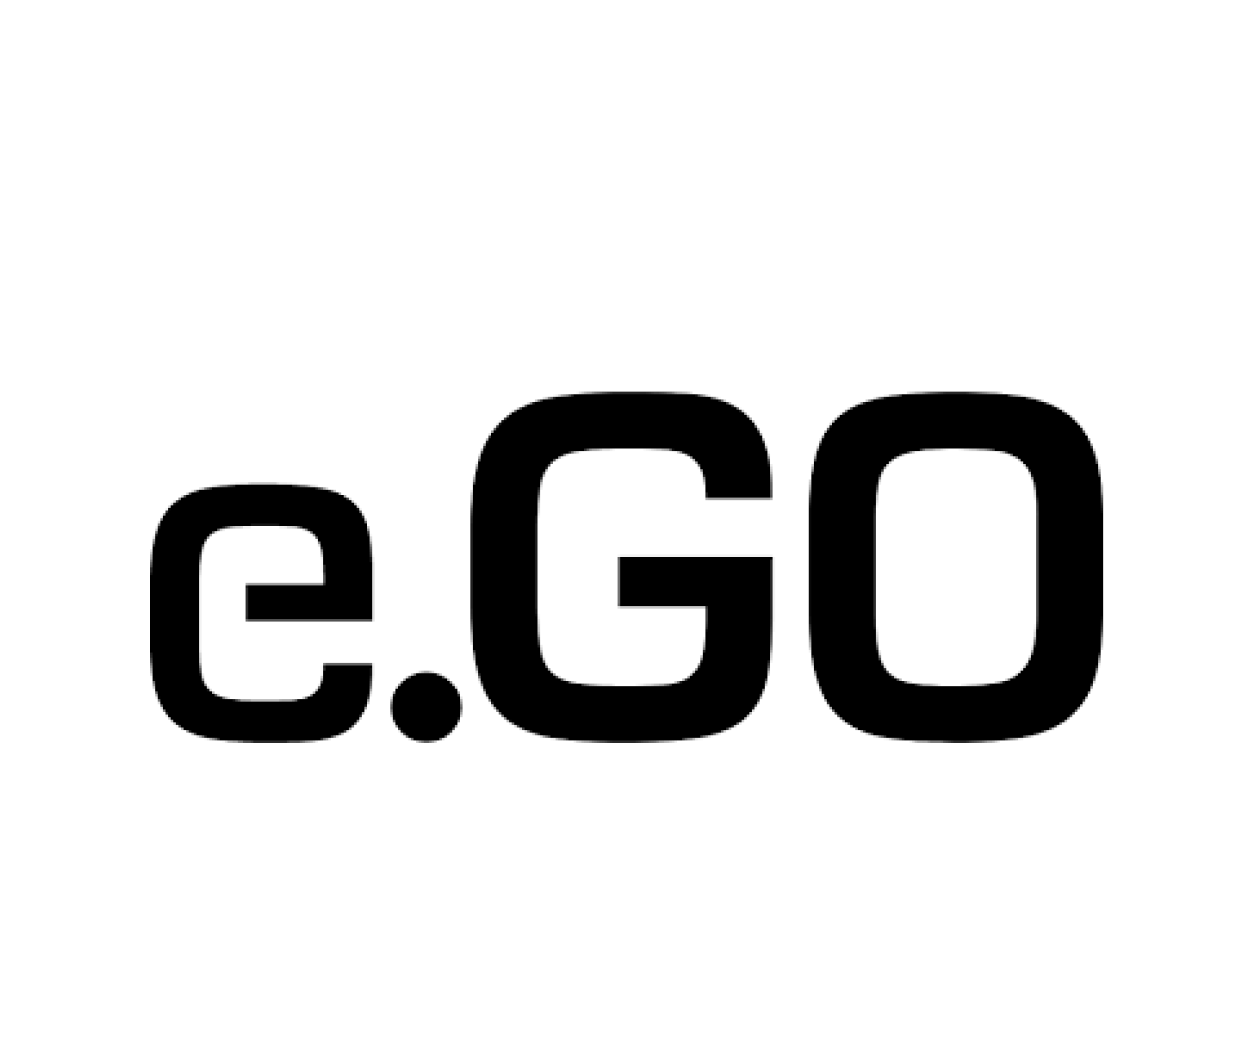 eGo Partner